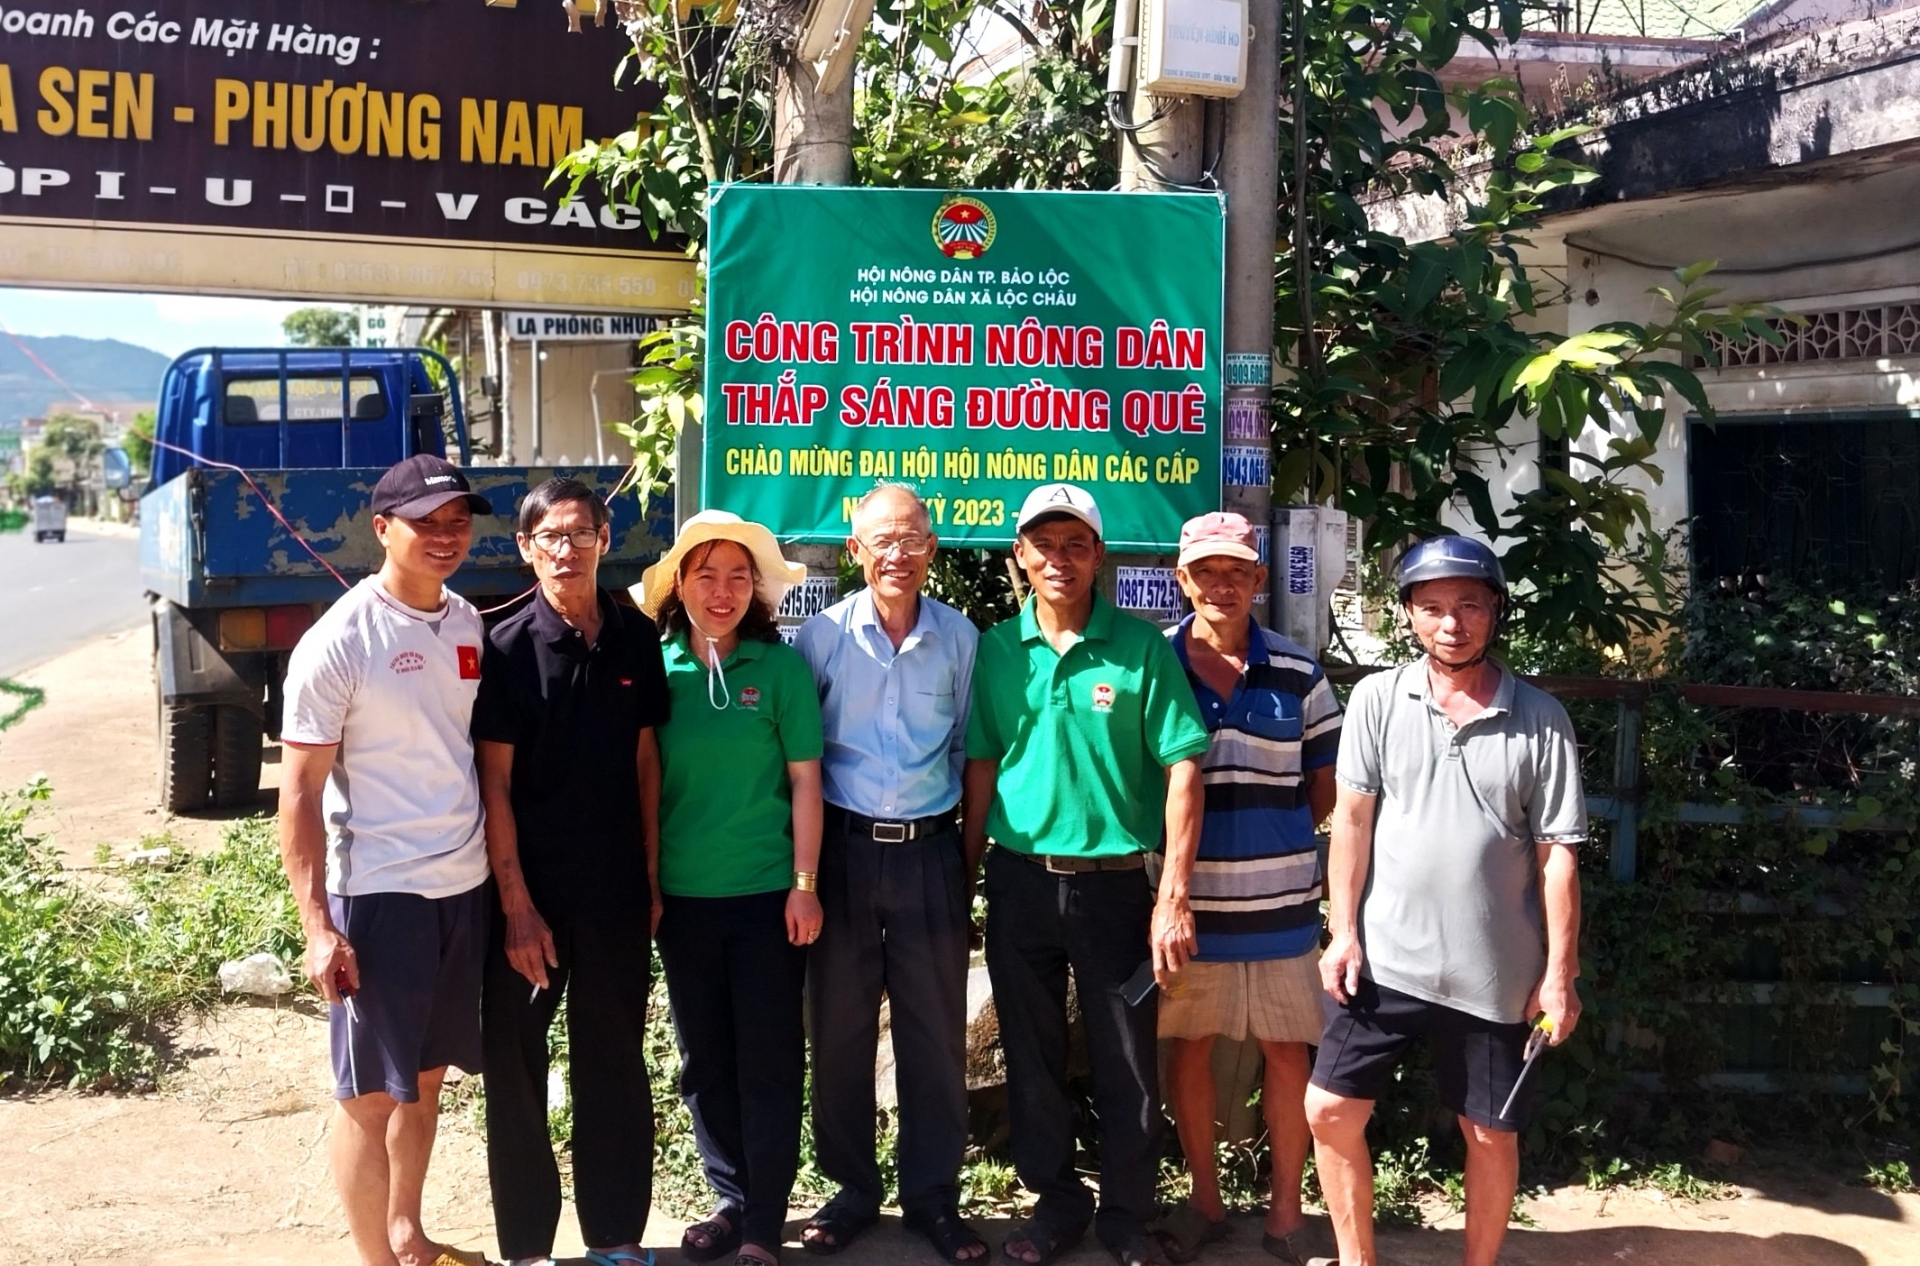 Bảo Lộc: Xây dựng 3 công trình thắp sáng đường quê